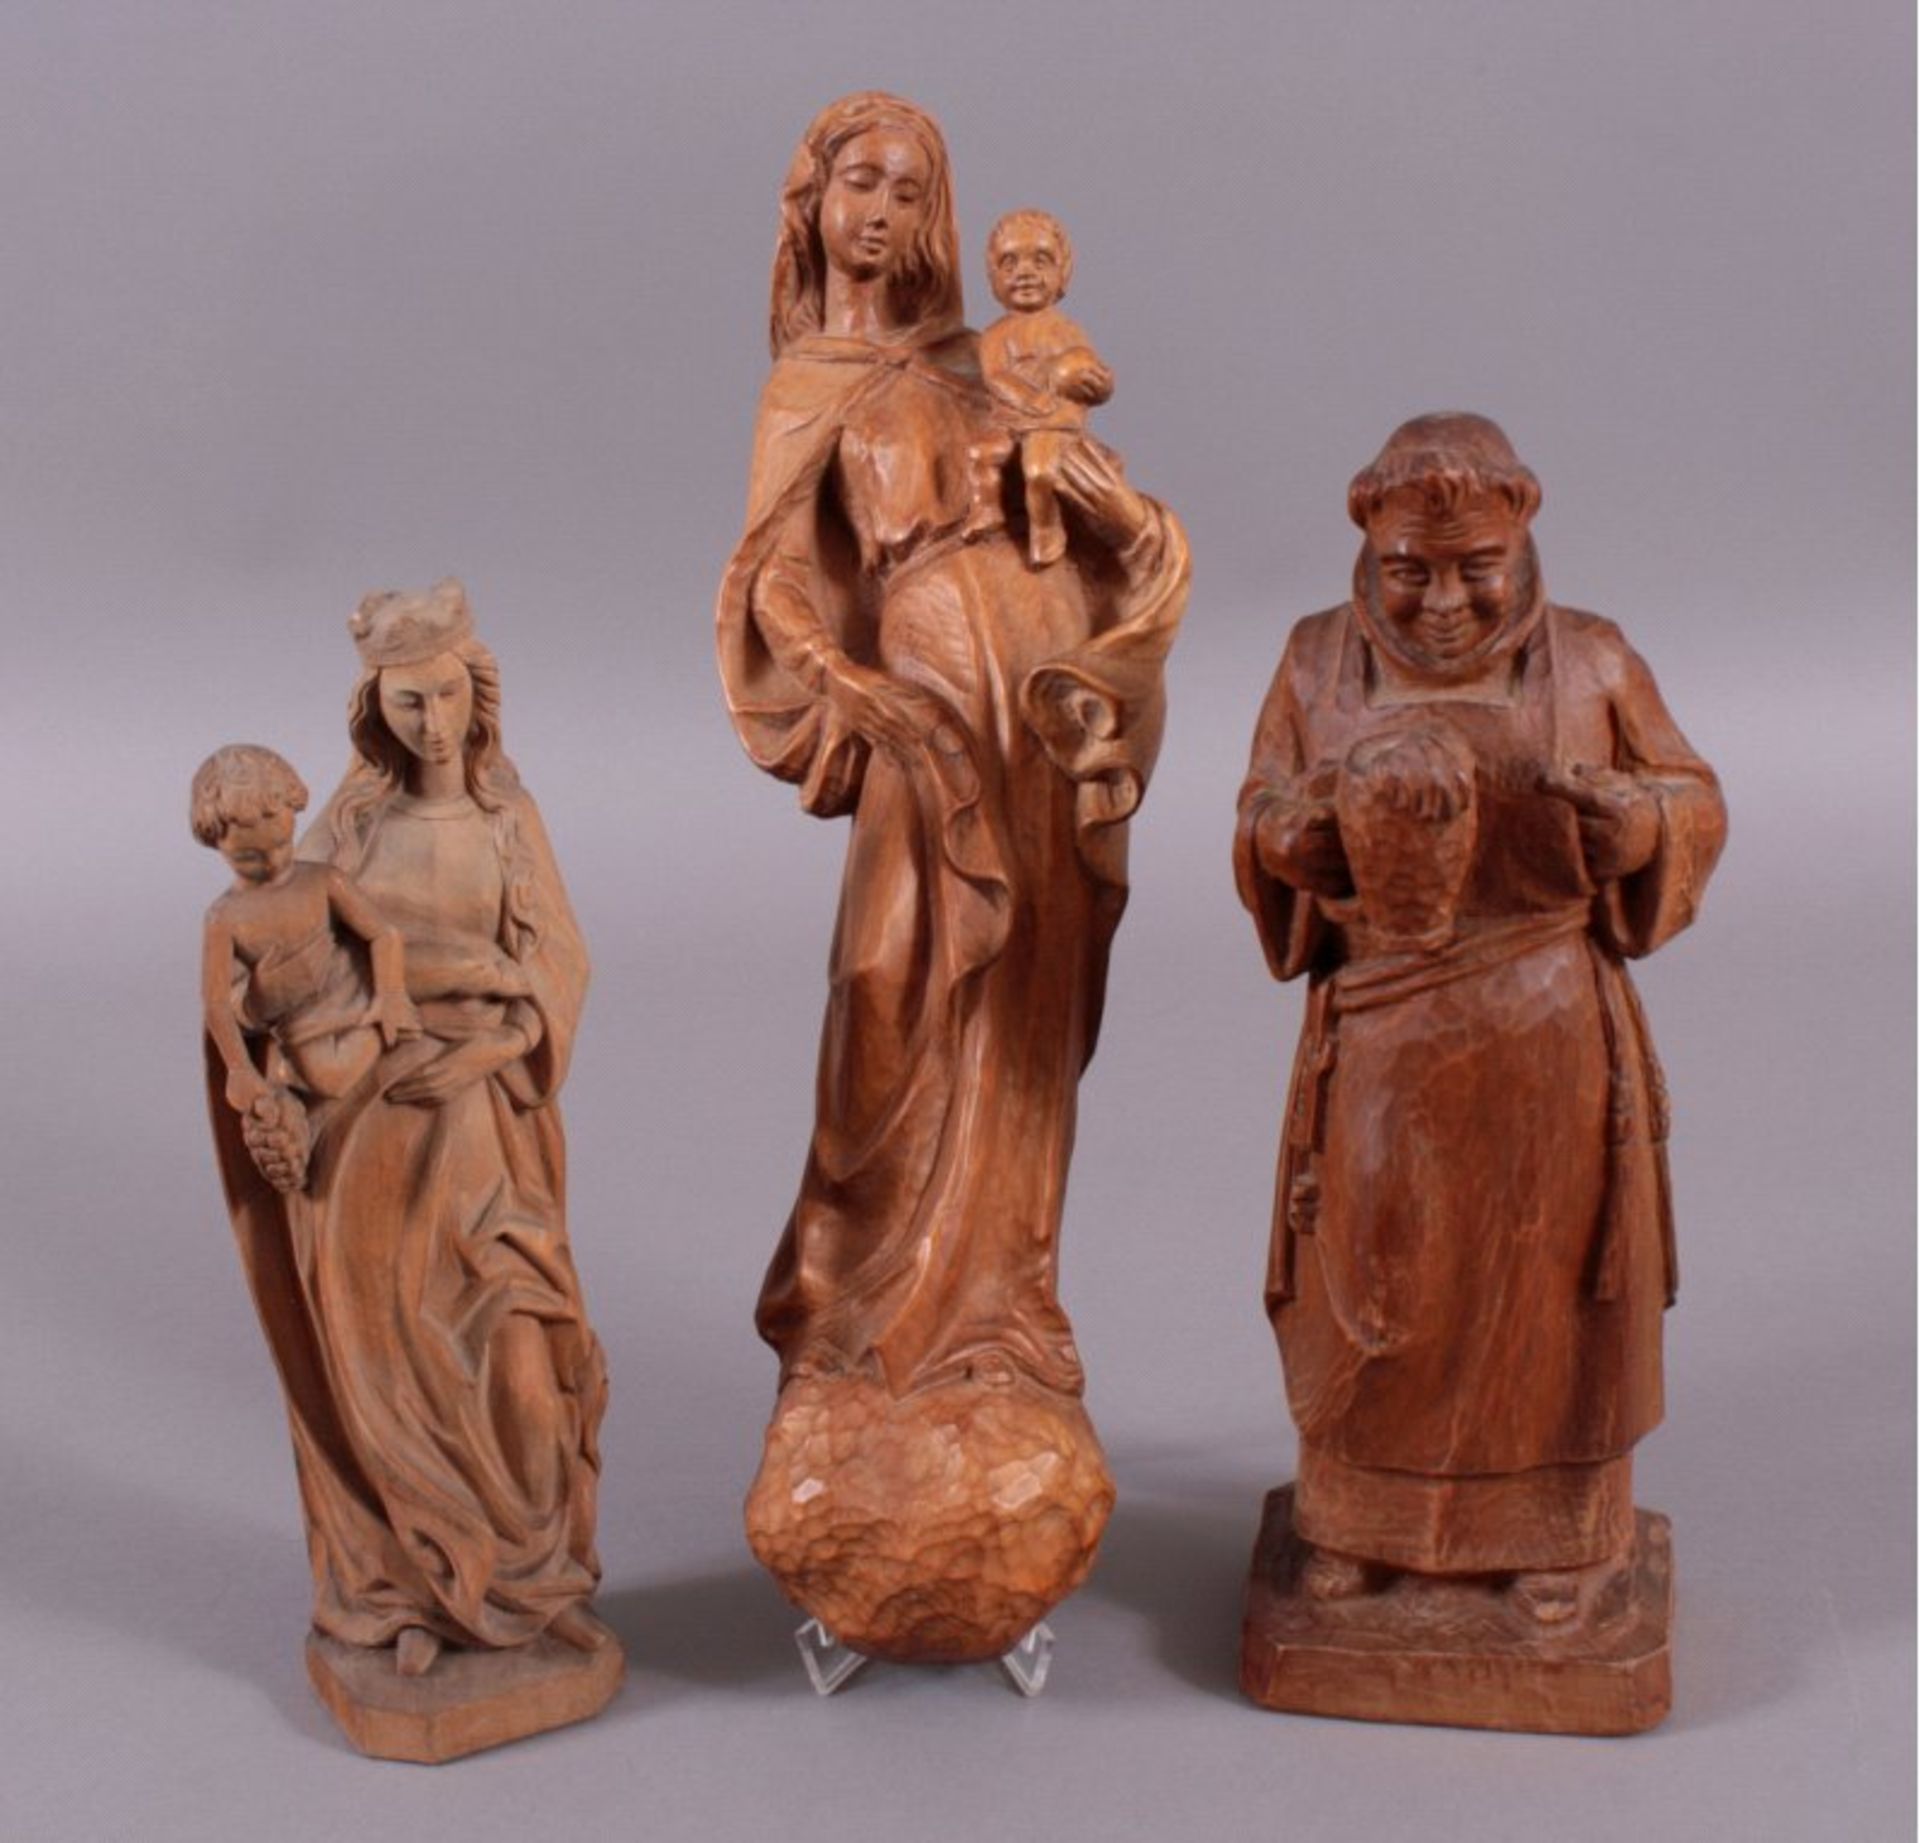 Holz-Skulpturen, 3 Stück2x Maria mit Kind, ca. H-34/50 cm.1x Mönch mit Krug, ca. H-38cm.